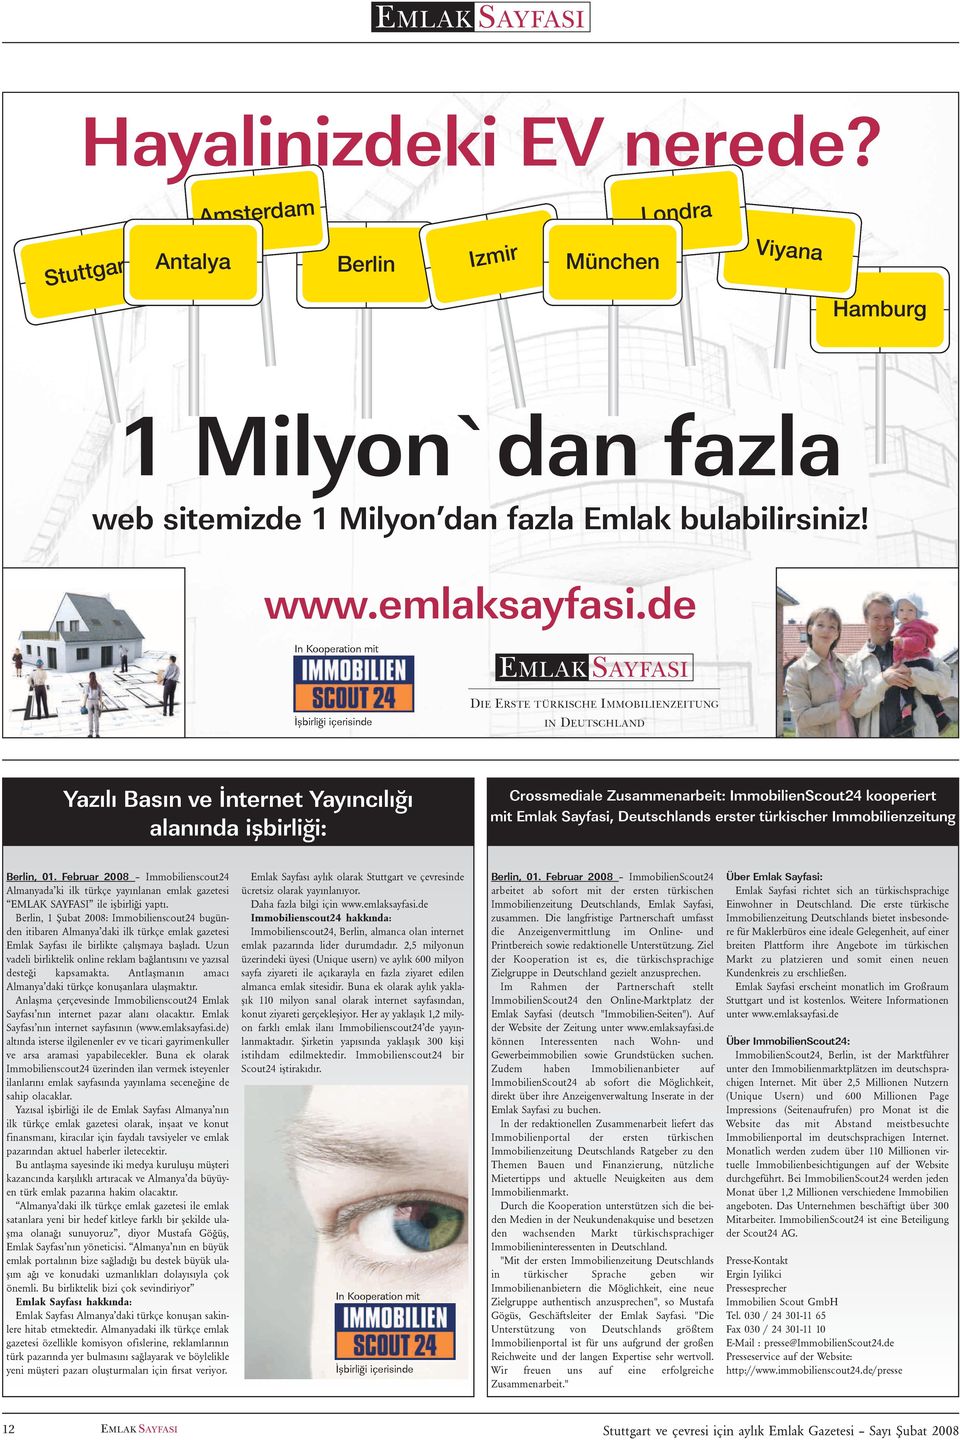 kooperiert mit Emlak Sayfasi, Deutschlands erster türkischer Immobilienzeitung Berlin, 01.